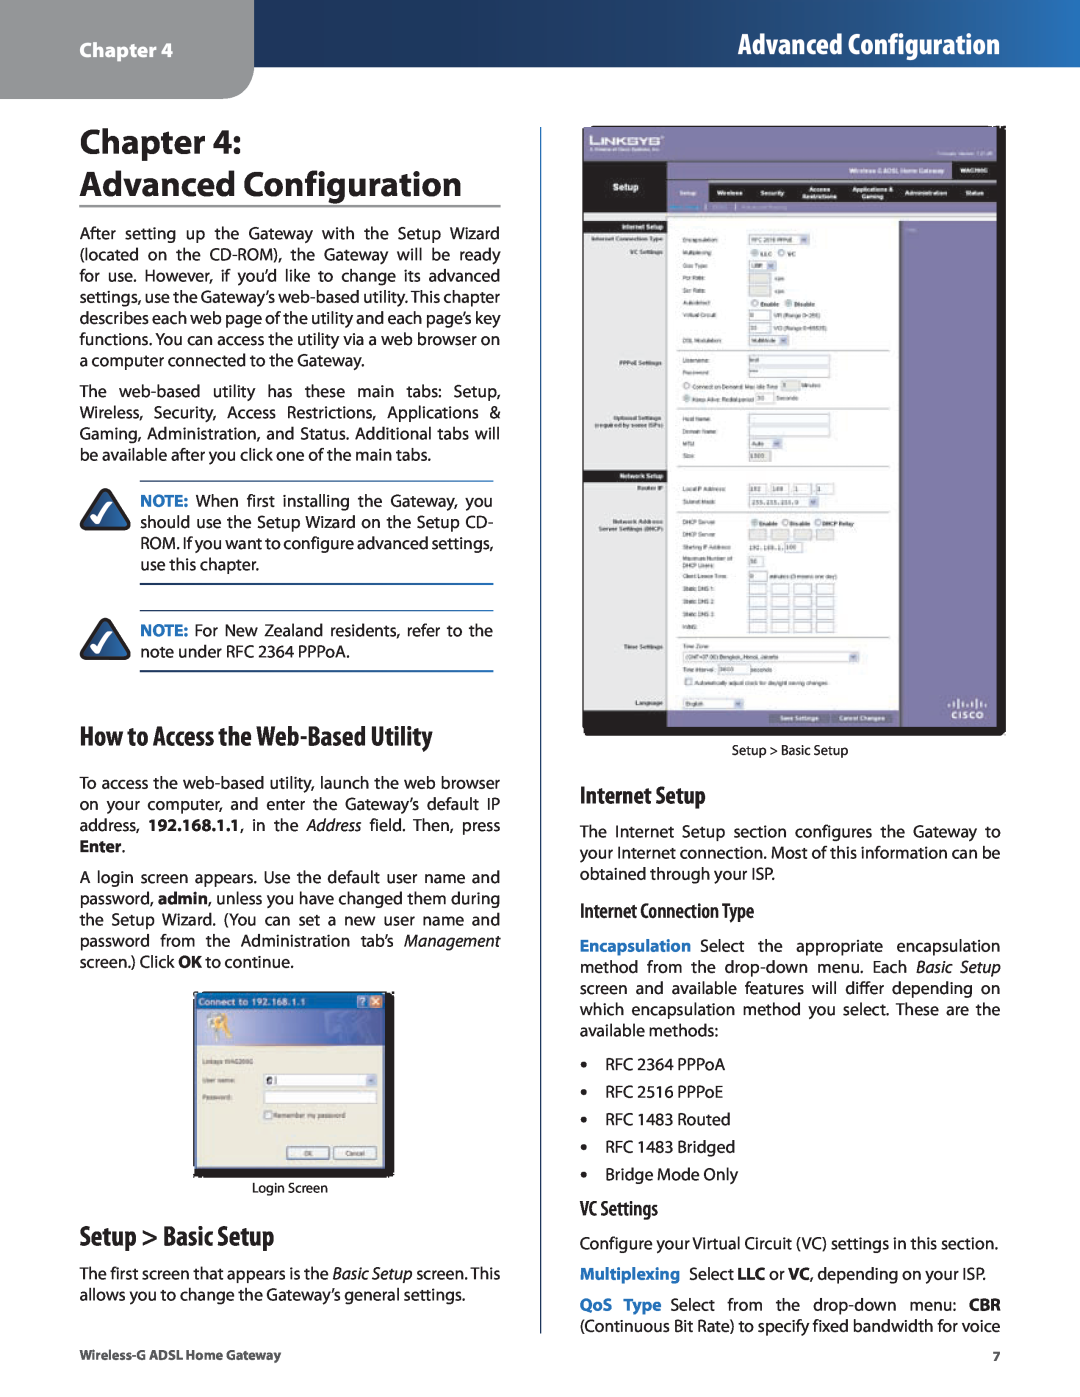 Linksys WAG200G Chapter Advanced Configuration, How to Access the Web-Based Utility, Setup Basic Setup, Internet Setup 